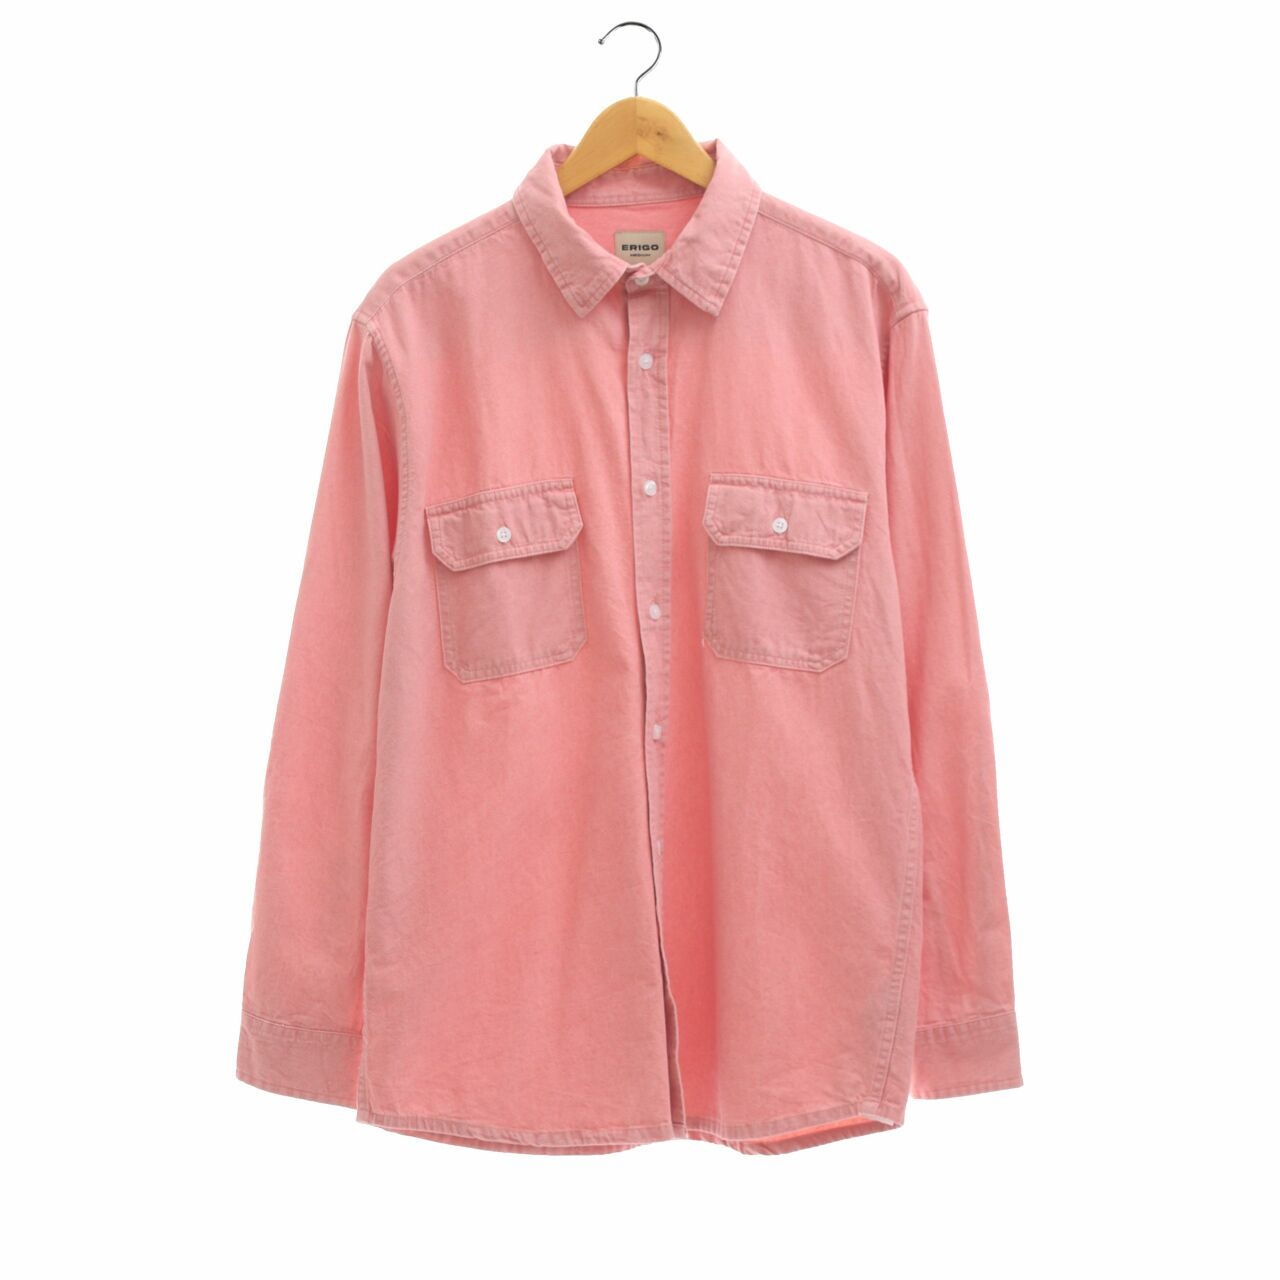 Erigo Pink Shirt